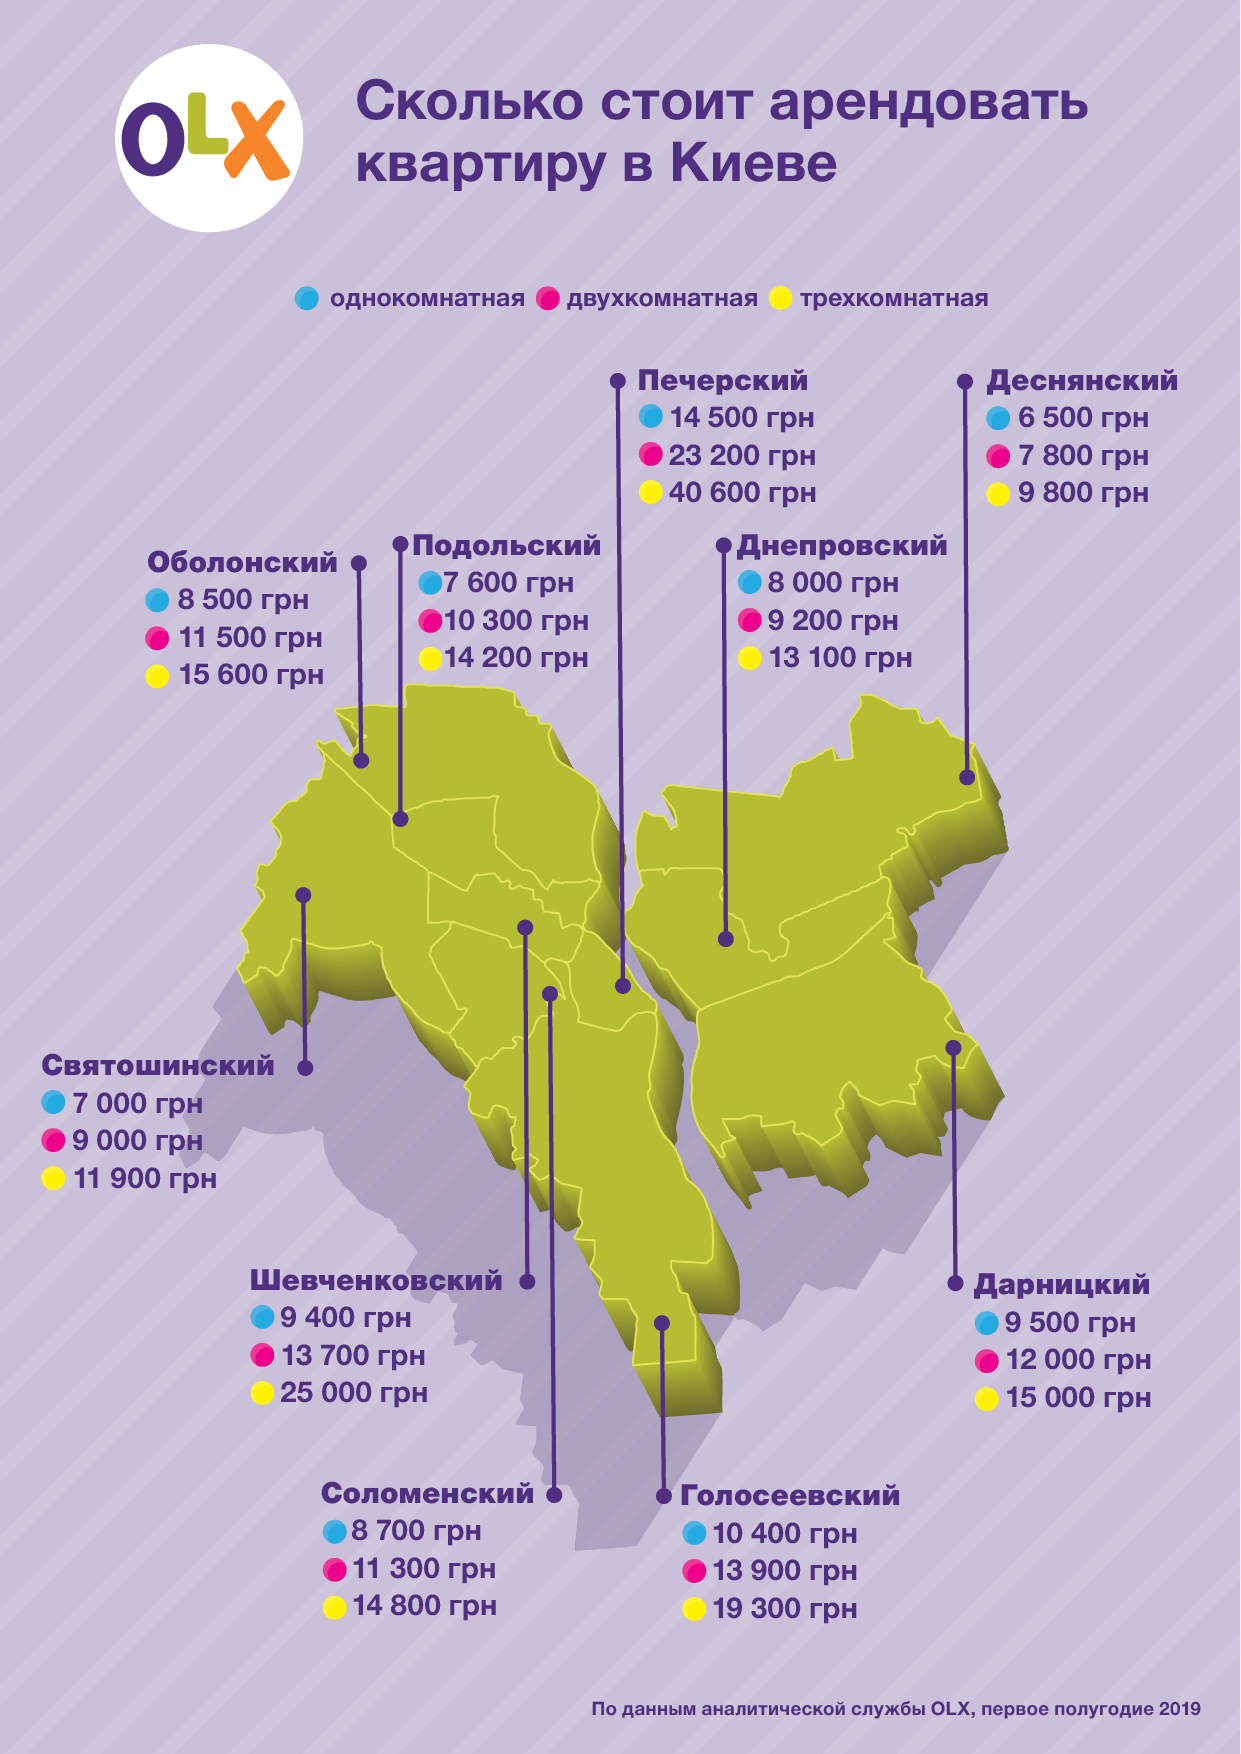 OLX_Сколько стоит арендовать квартиру в Киеве